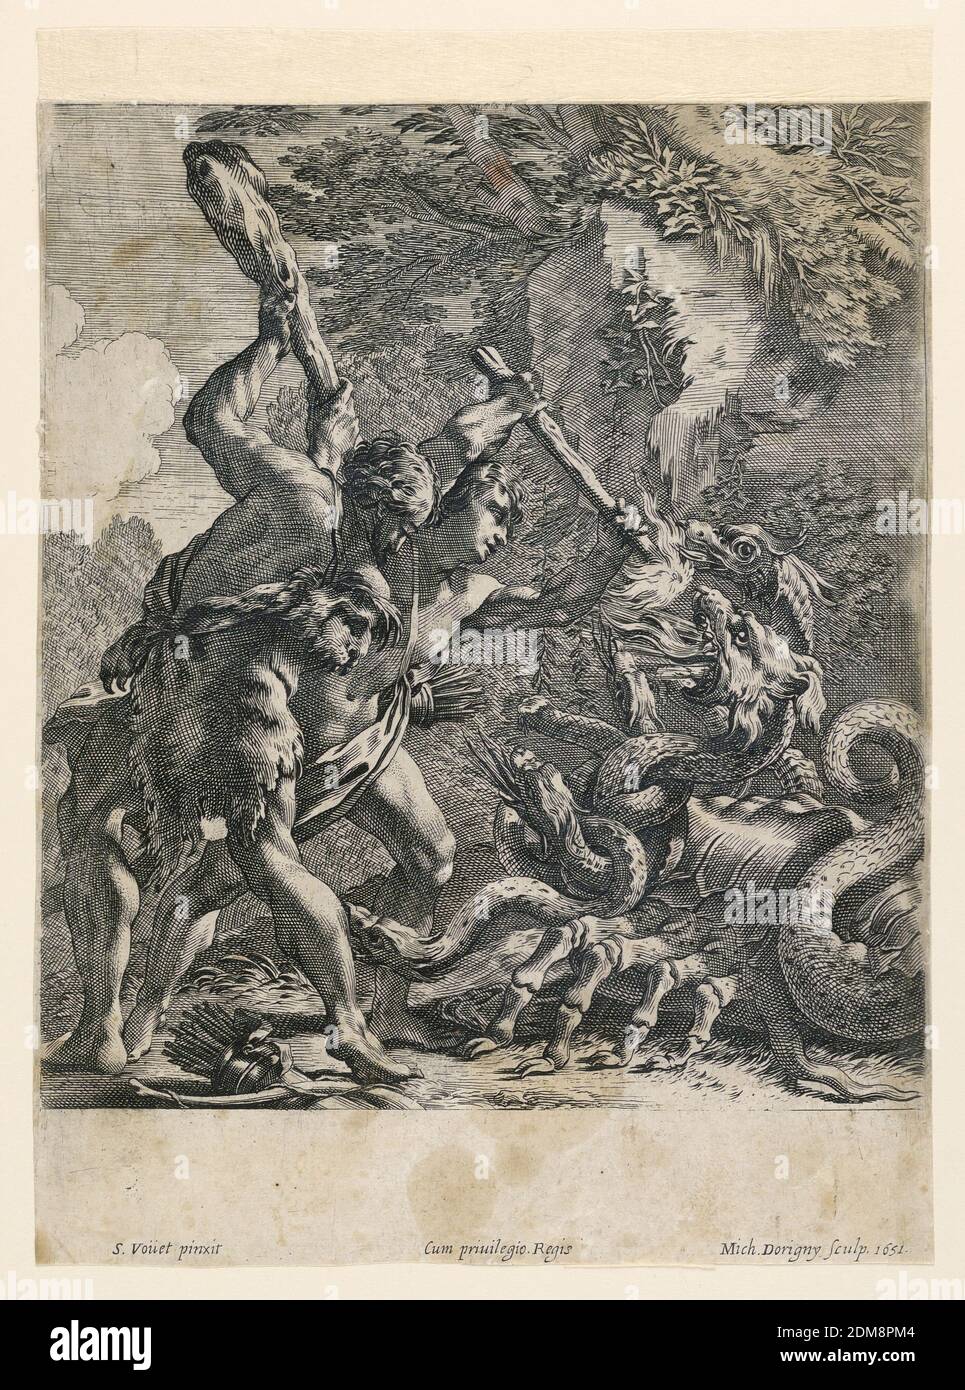 Hercules qui laque l'Hydra de Lerna, Michel Dorigny, 1617 – 1665, Simon Vouet, français, 1590 - 1649, gravure sur papier, hercules et une autre figure sont vus en combat avec l'Hydra, dont le corps ressemble à celui d'un crabe. Ci-dessous, les noms de l'artiste, du graveur et la date., France, 1651, Imprimer Banque D'Images